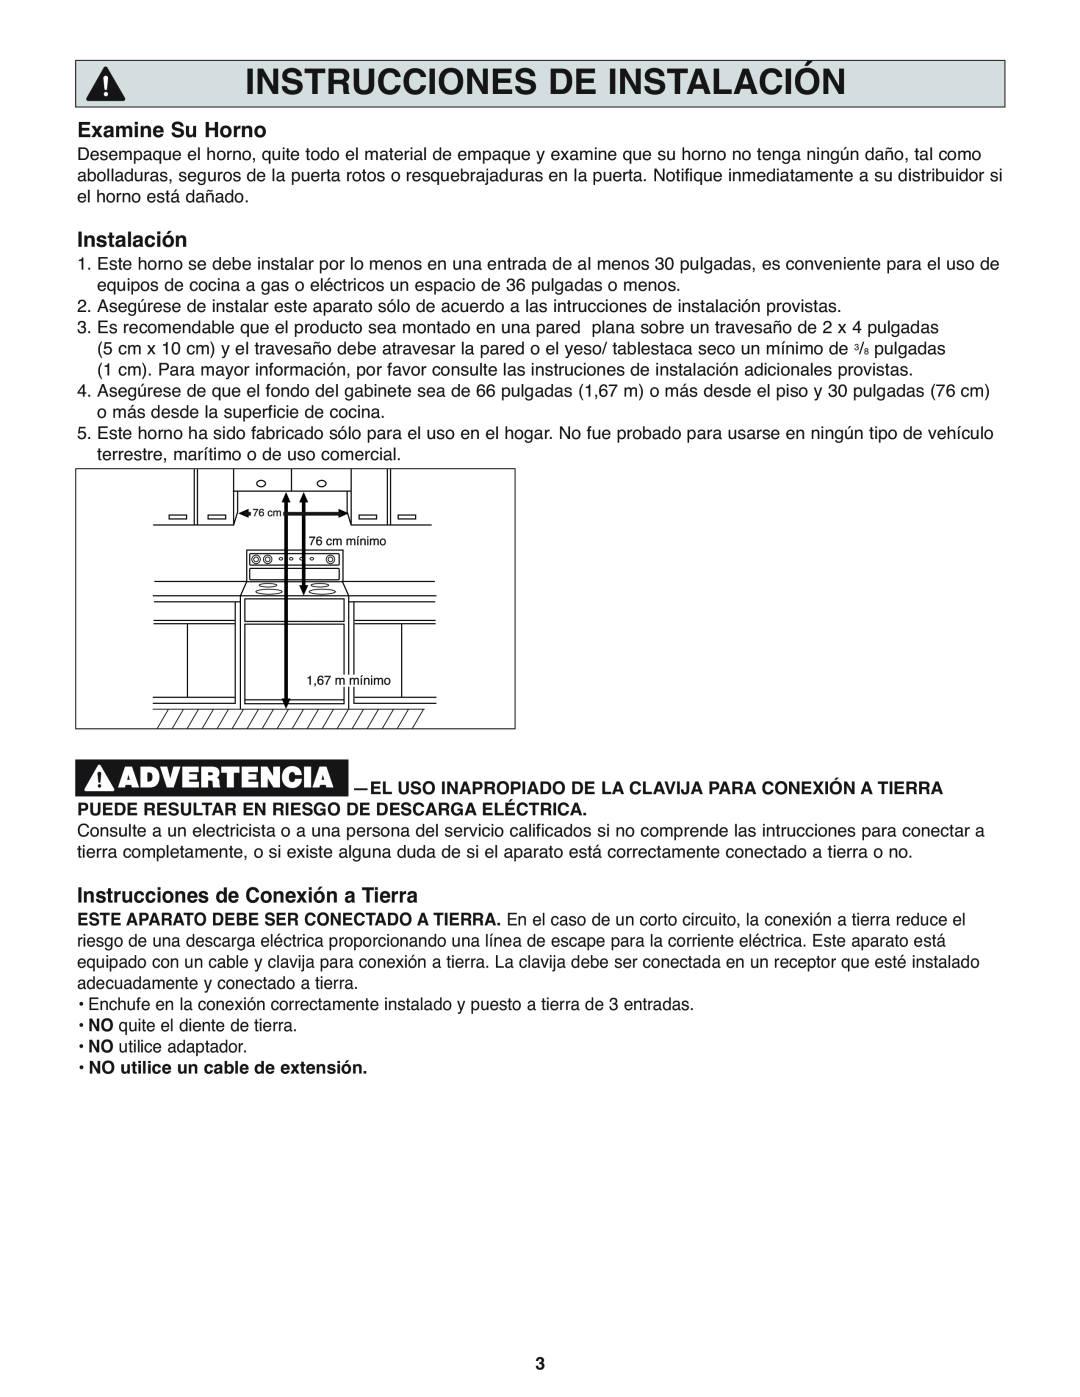 Panasonic NN-H275 operating instructions Instrucciones De Instalación, Examine Su Horno, Instrucciones de Conexión a Tierra 